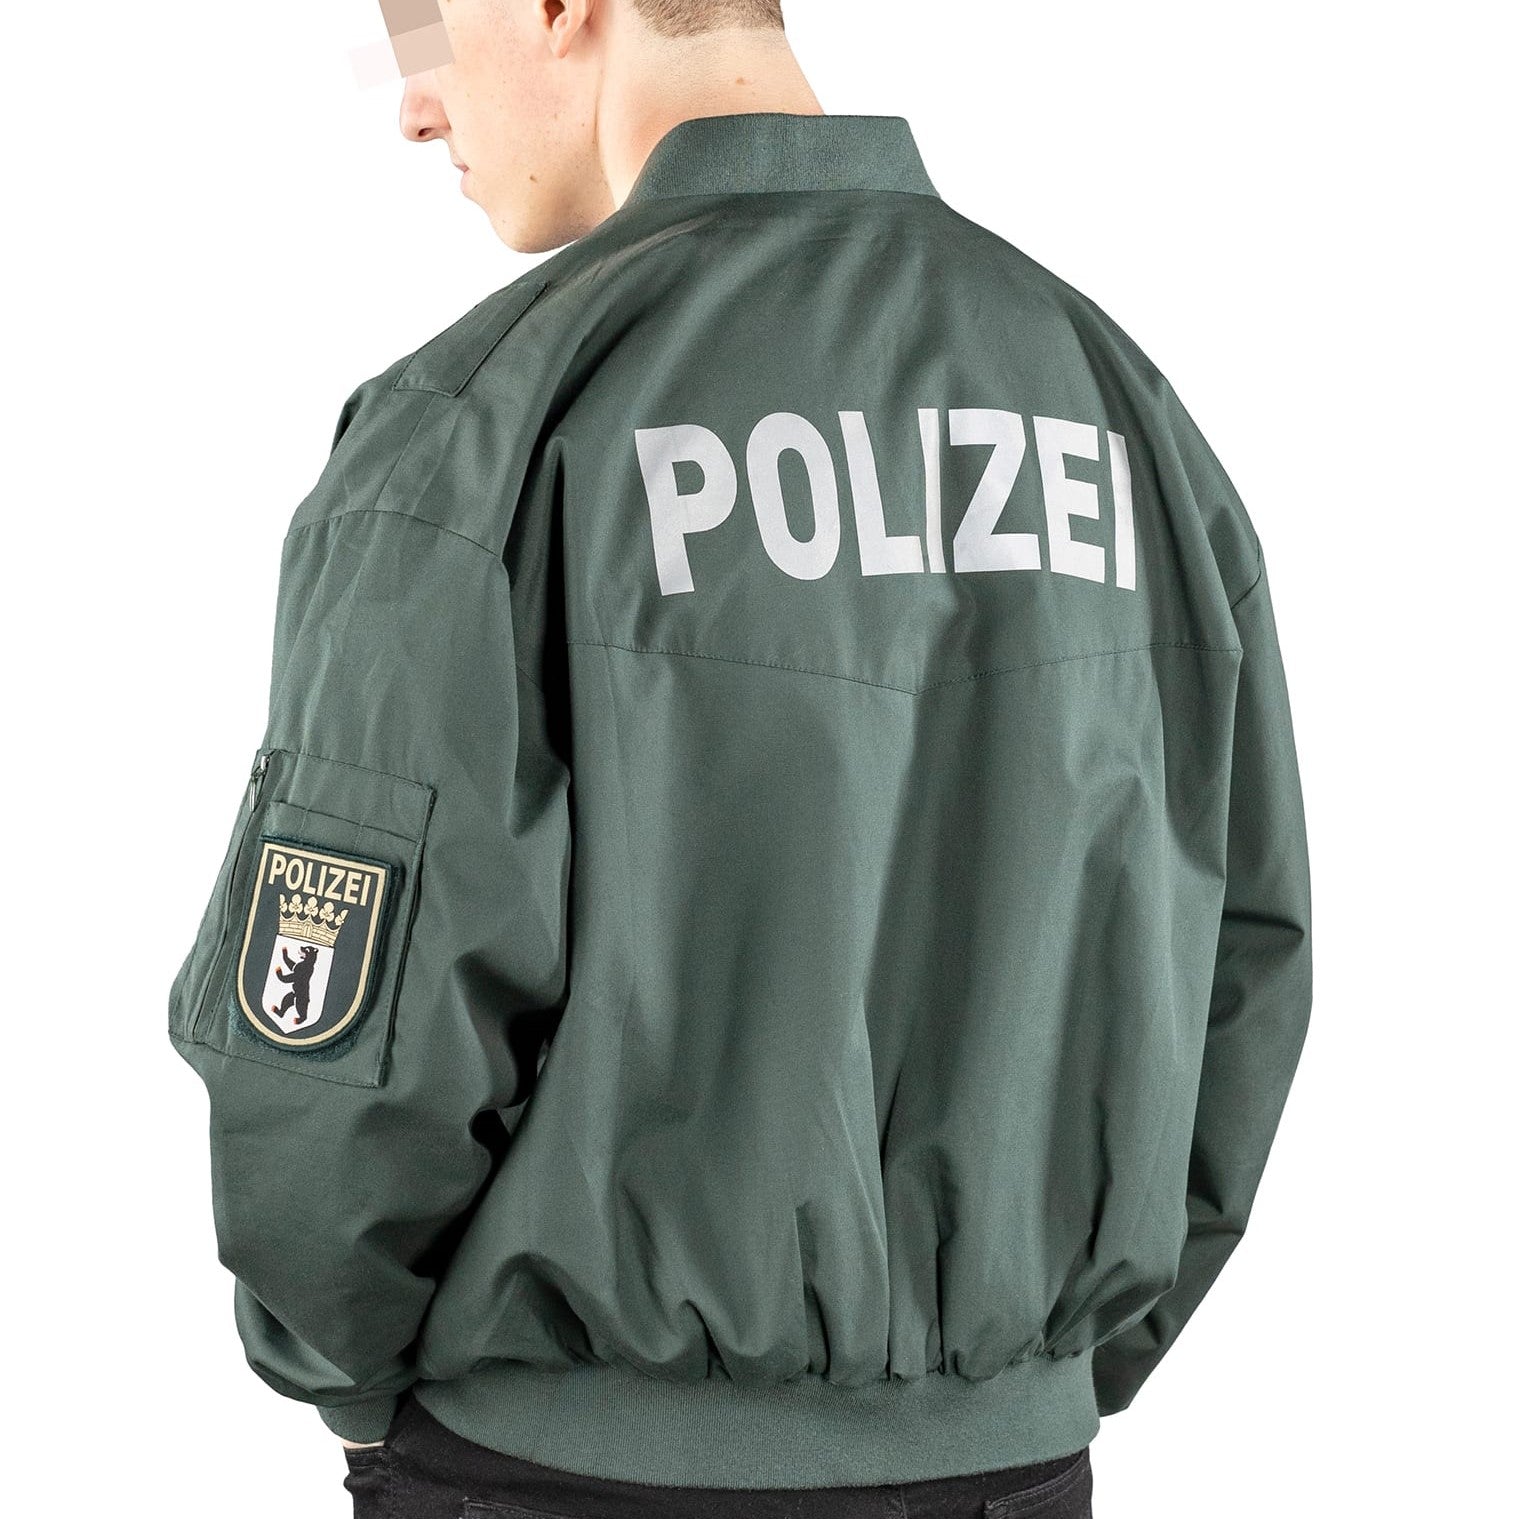 Polizei & ZOLL